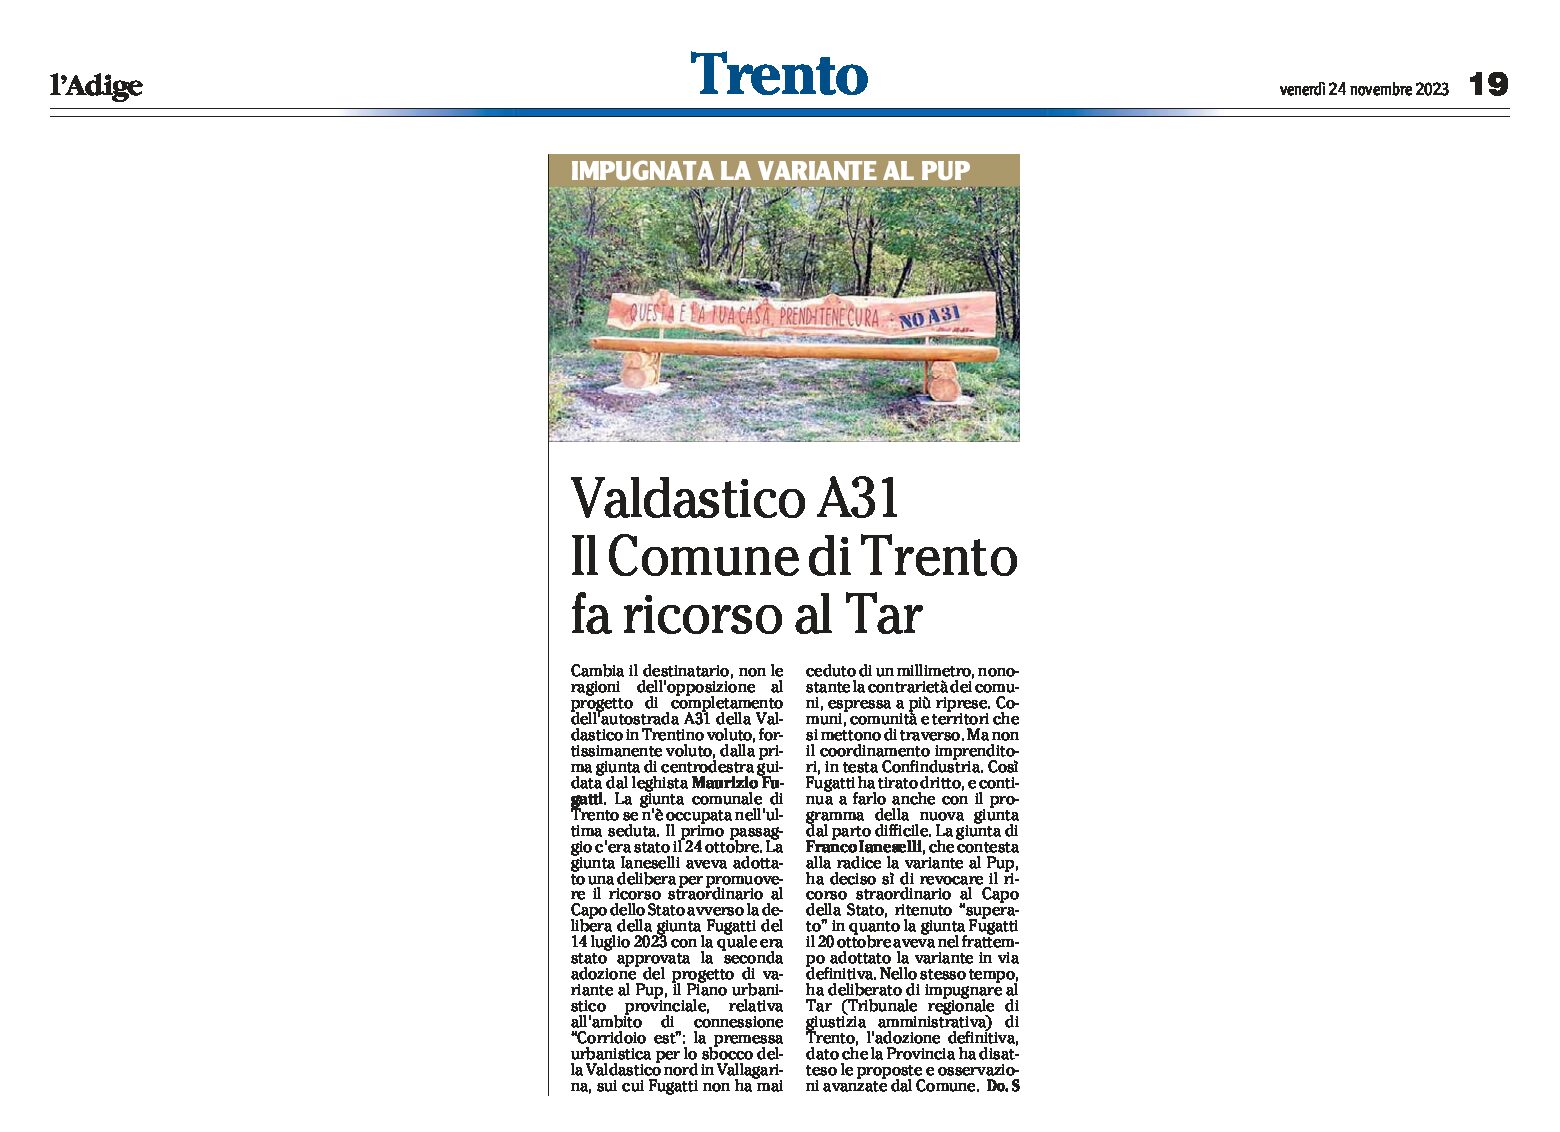 Valdastico: il Comune di Trento fa ricorso al Tar